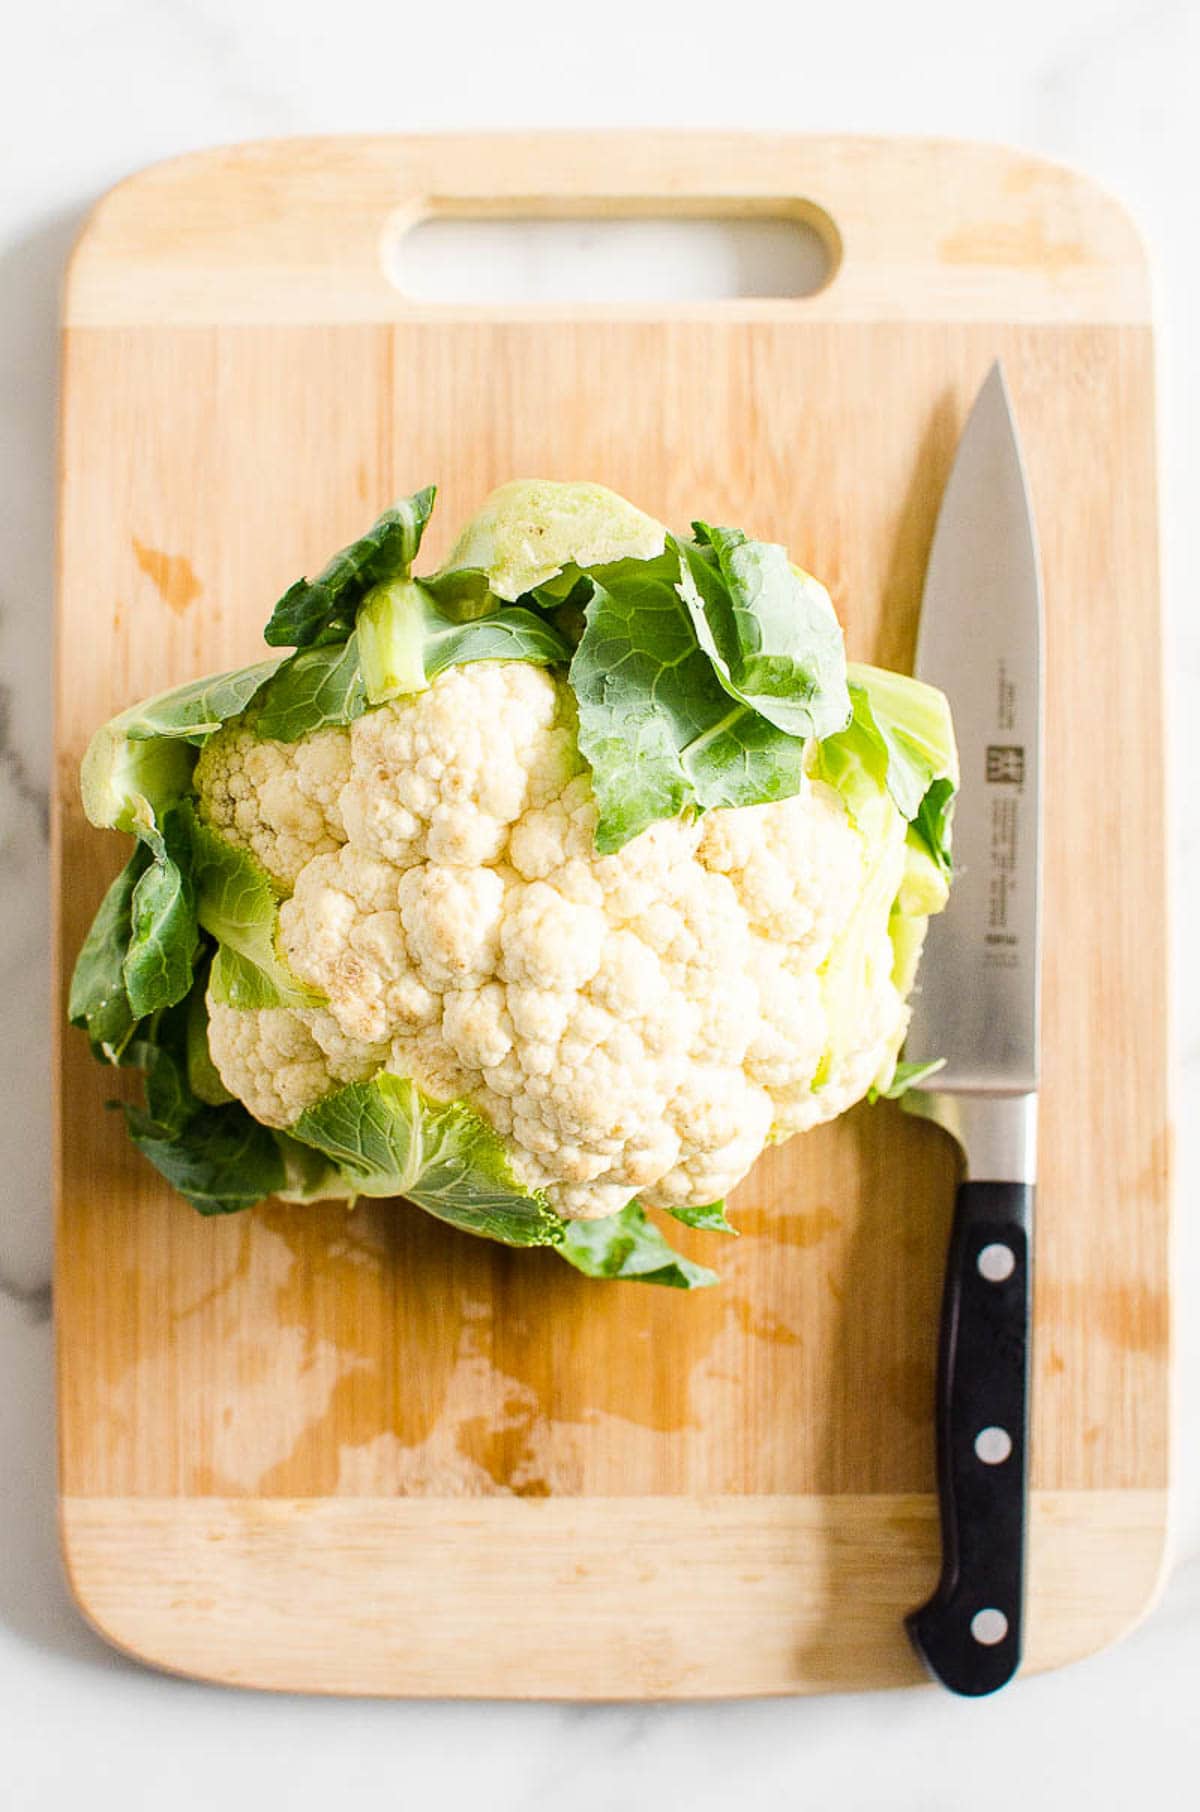 A head of cauliflower on cutting board with knife.